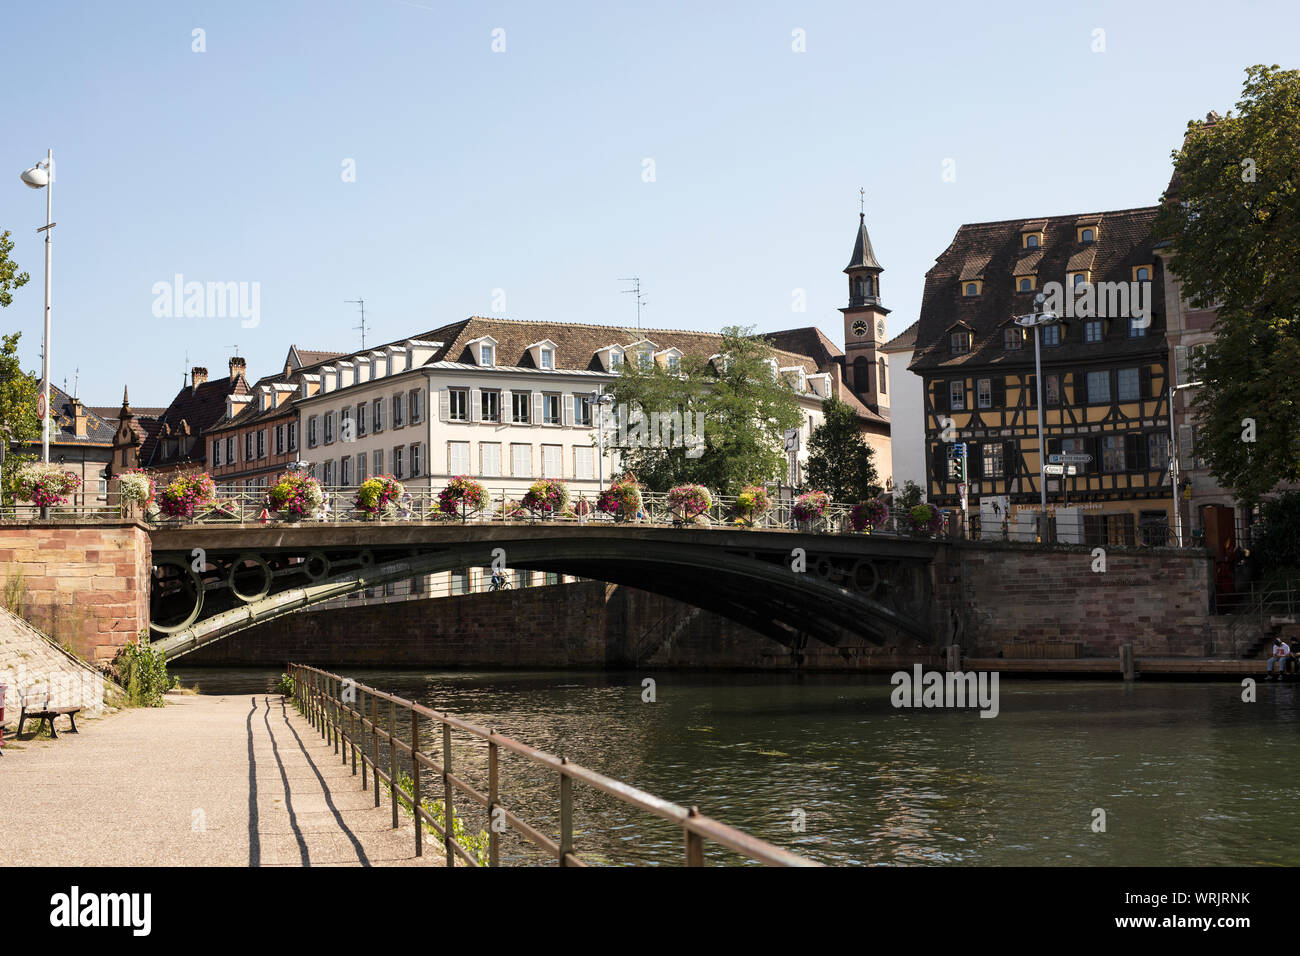 Le pont Saint-Thomas au-dessus du canal dans le quartier de la petite France à Strasbourg, en France, près de l'église Saint-Louis de Strasbourg. Banque D'Images